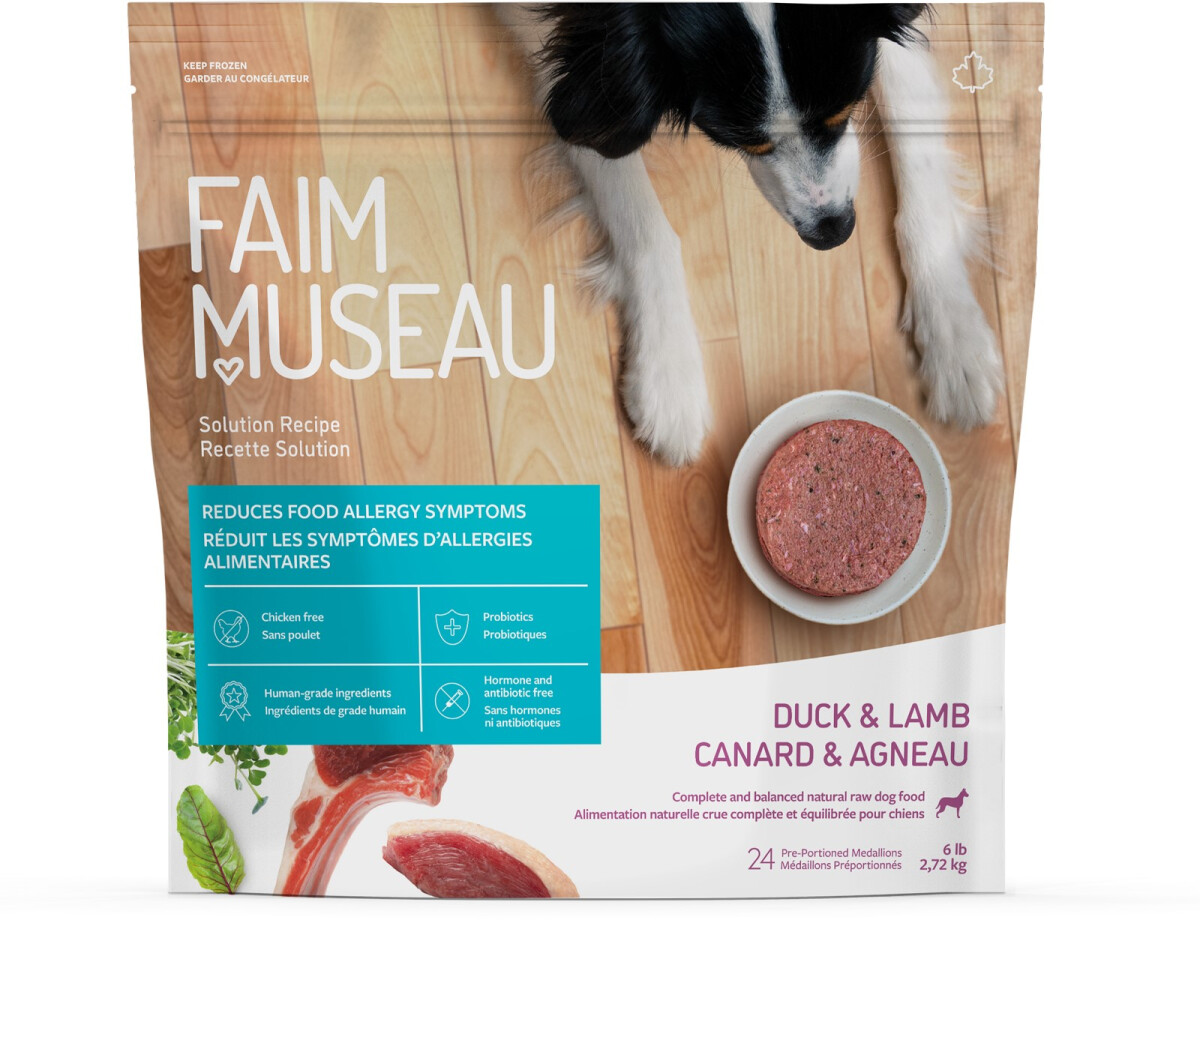 Fm272 - Nourriture crue recette solution canard & agneau pour chiens - Faim Museau